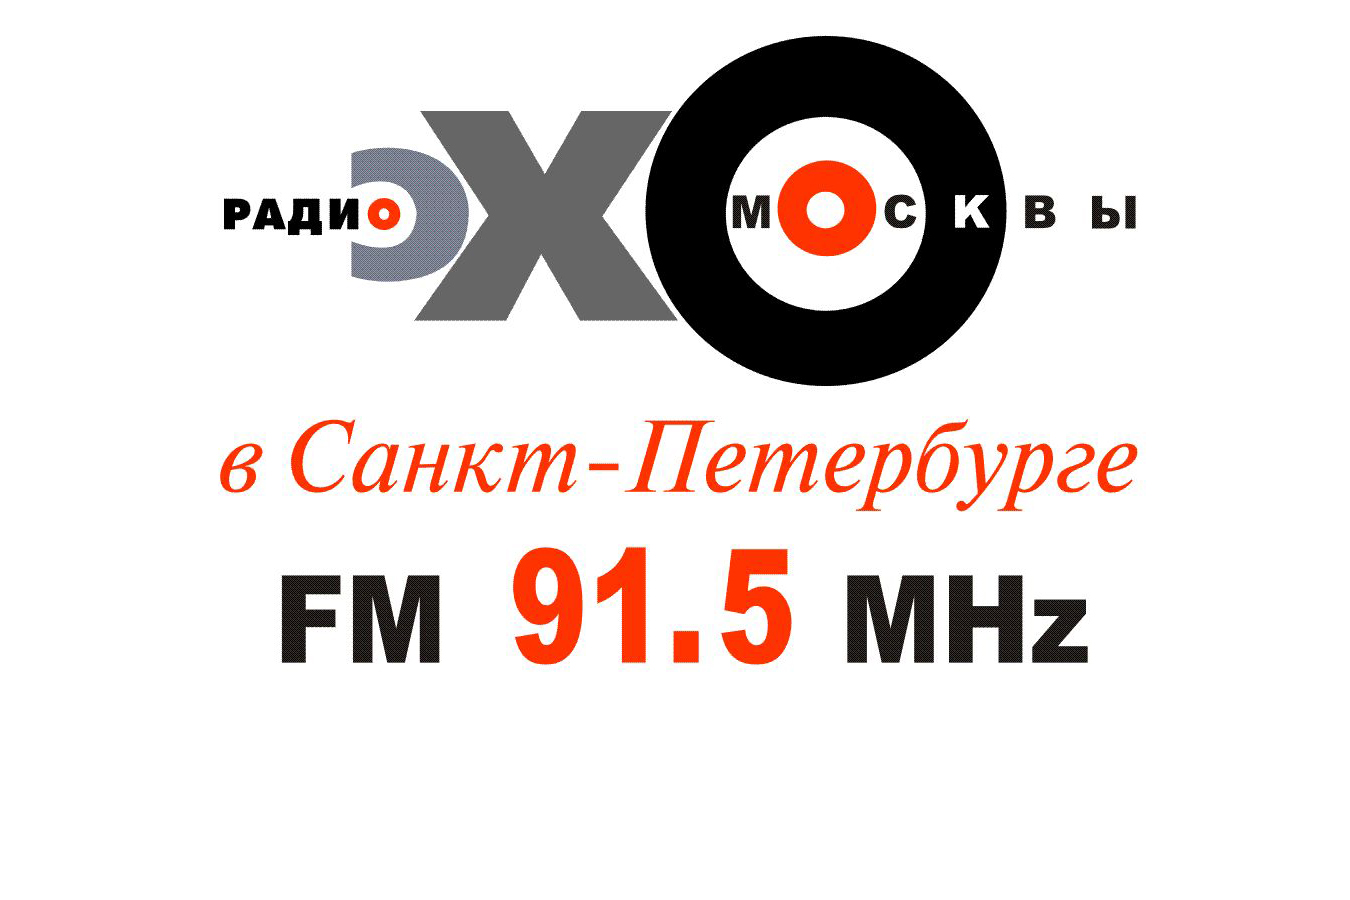  Радио Эхо Москвы 91.5FM, г. Санкт-Петербург